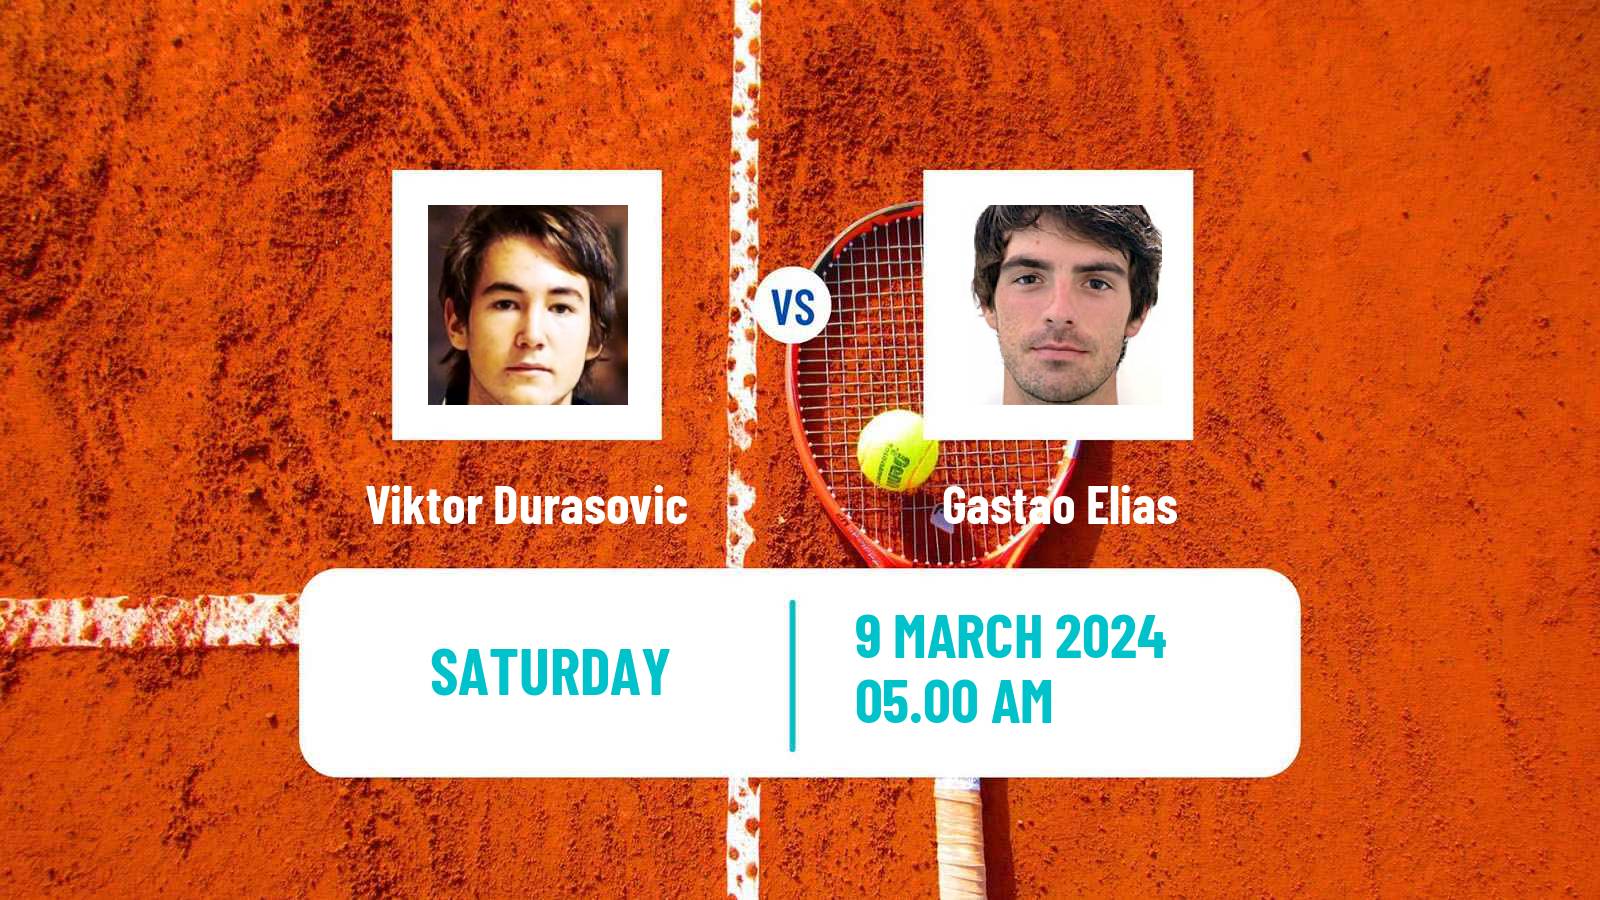 Tennis ITF M25 Quinta Do Lago Men Viktor Durasovic - Gastao Elias